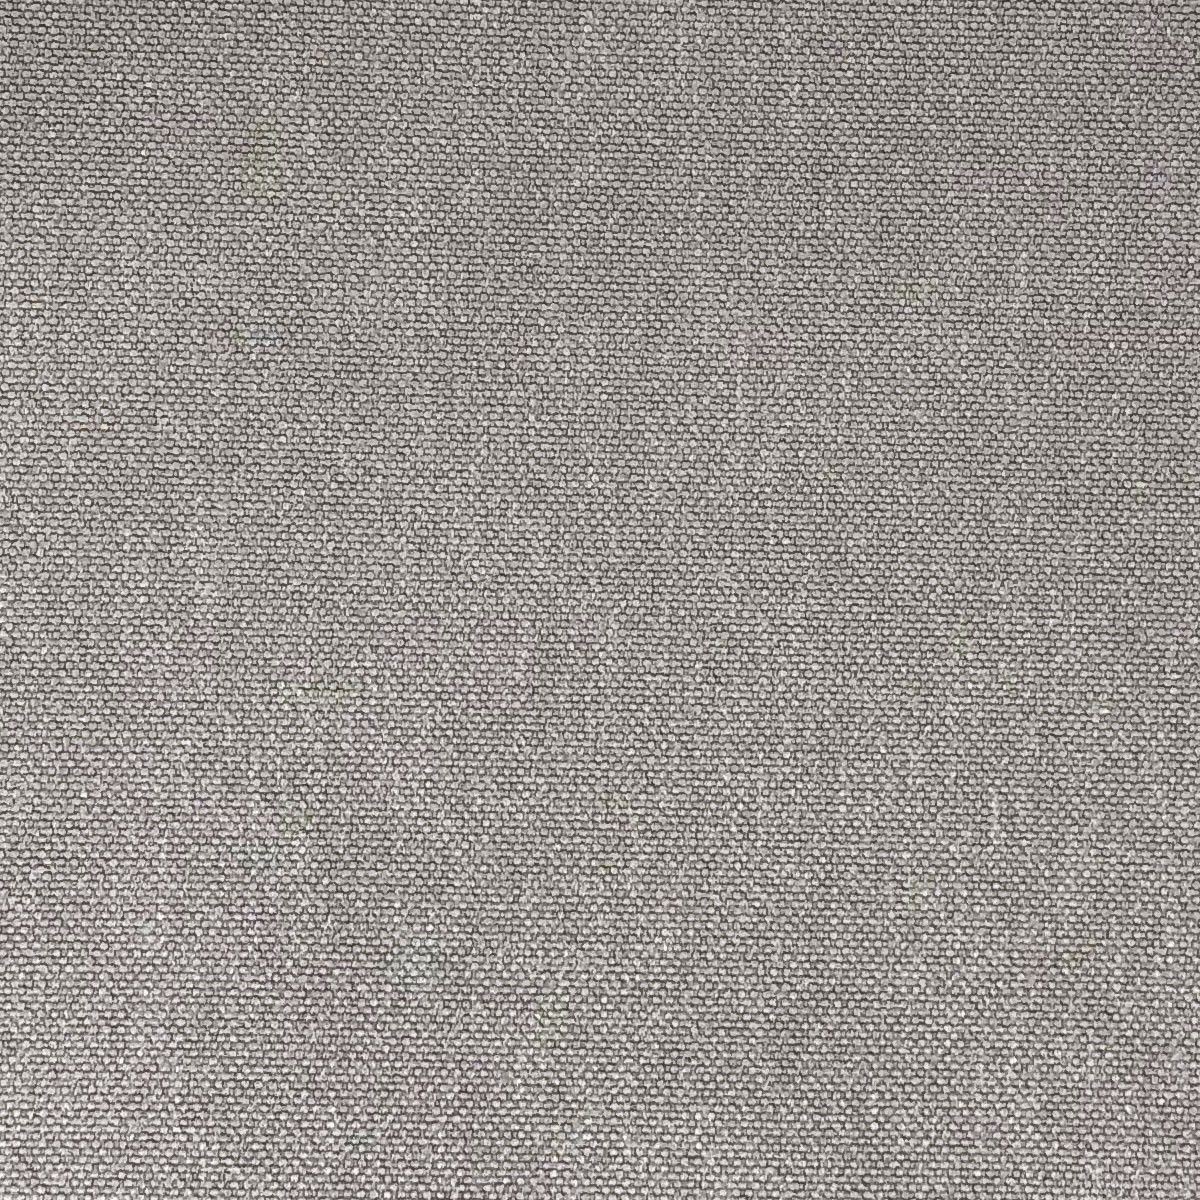 Glinara Pecan Fabric by Chatham Glyn